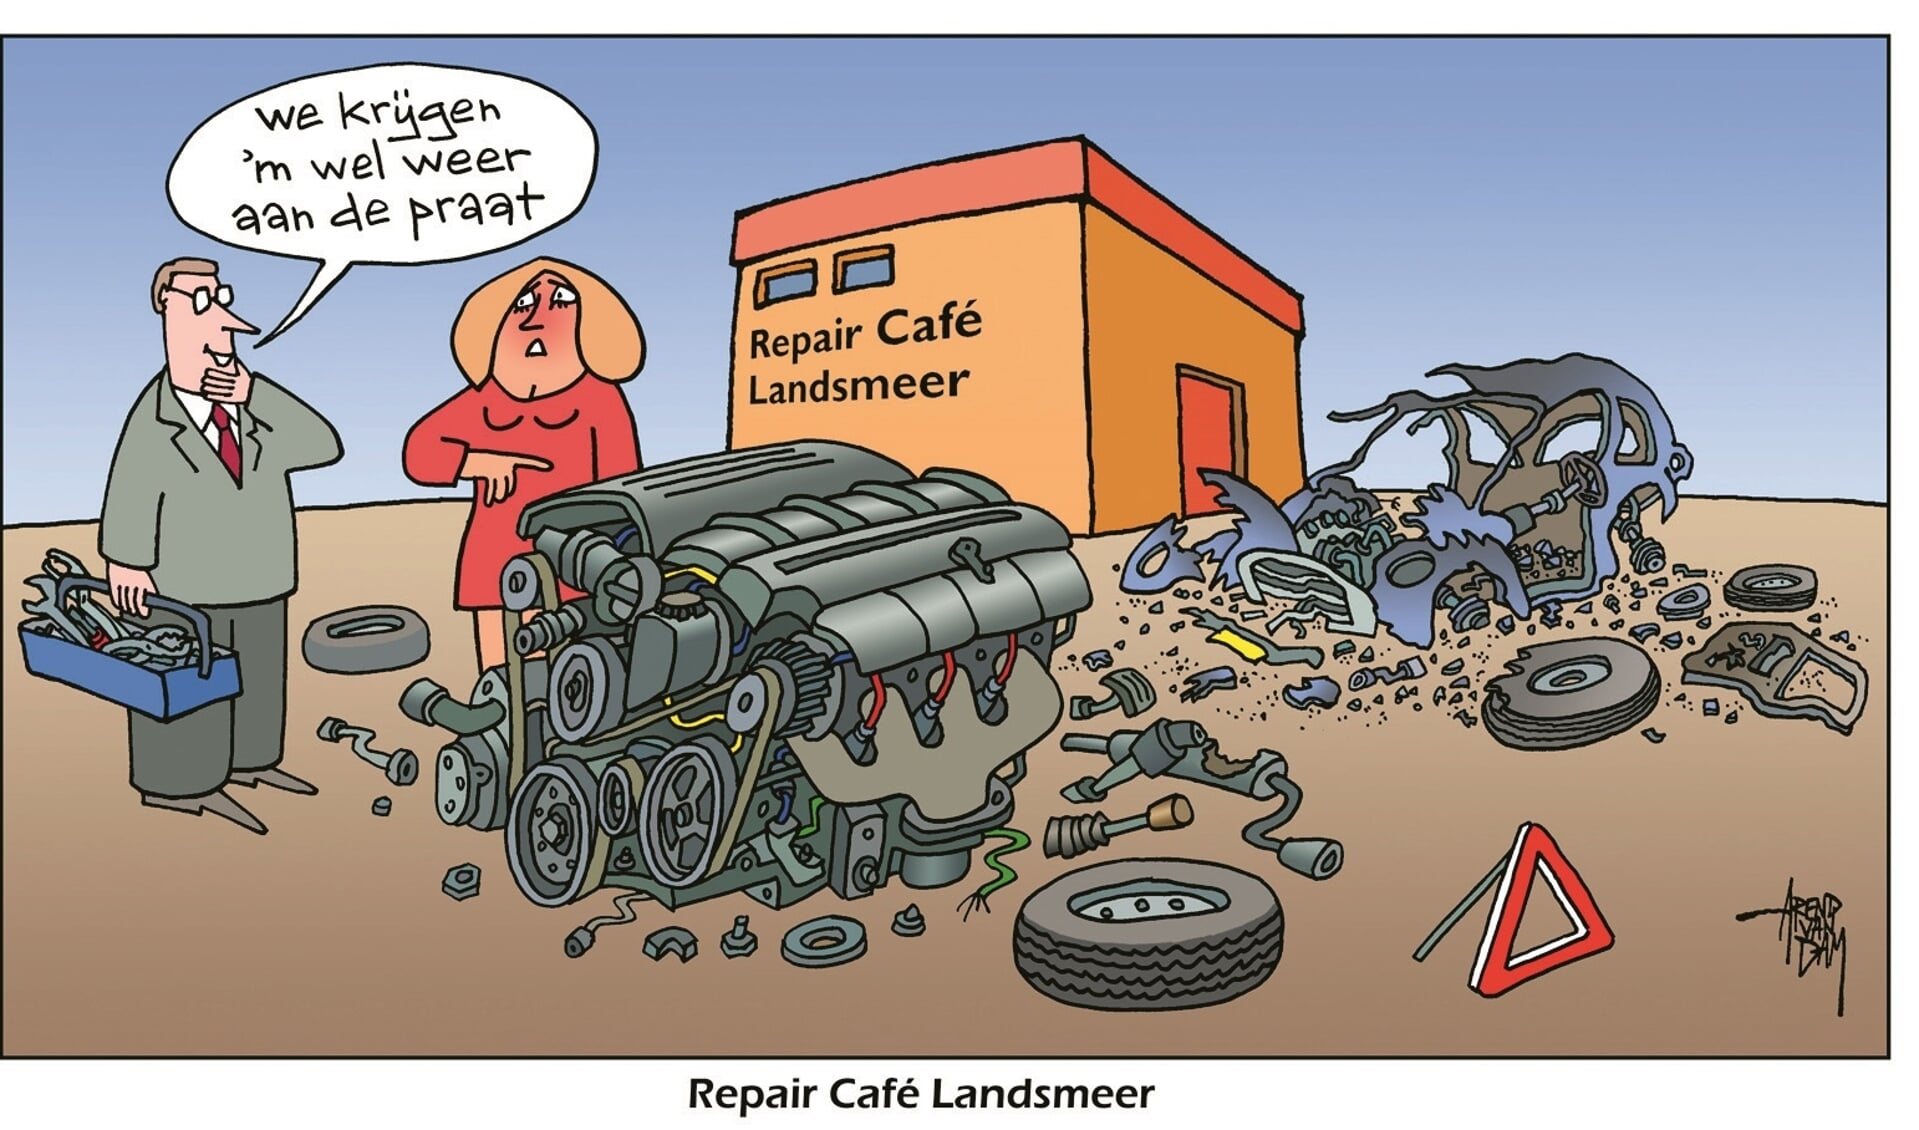 Repaircafé Landsmeer